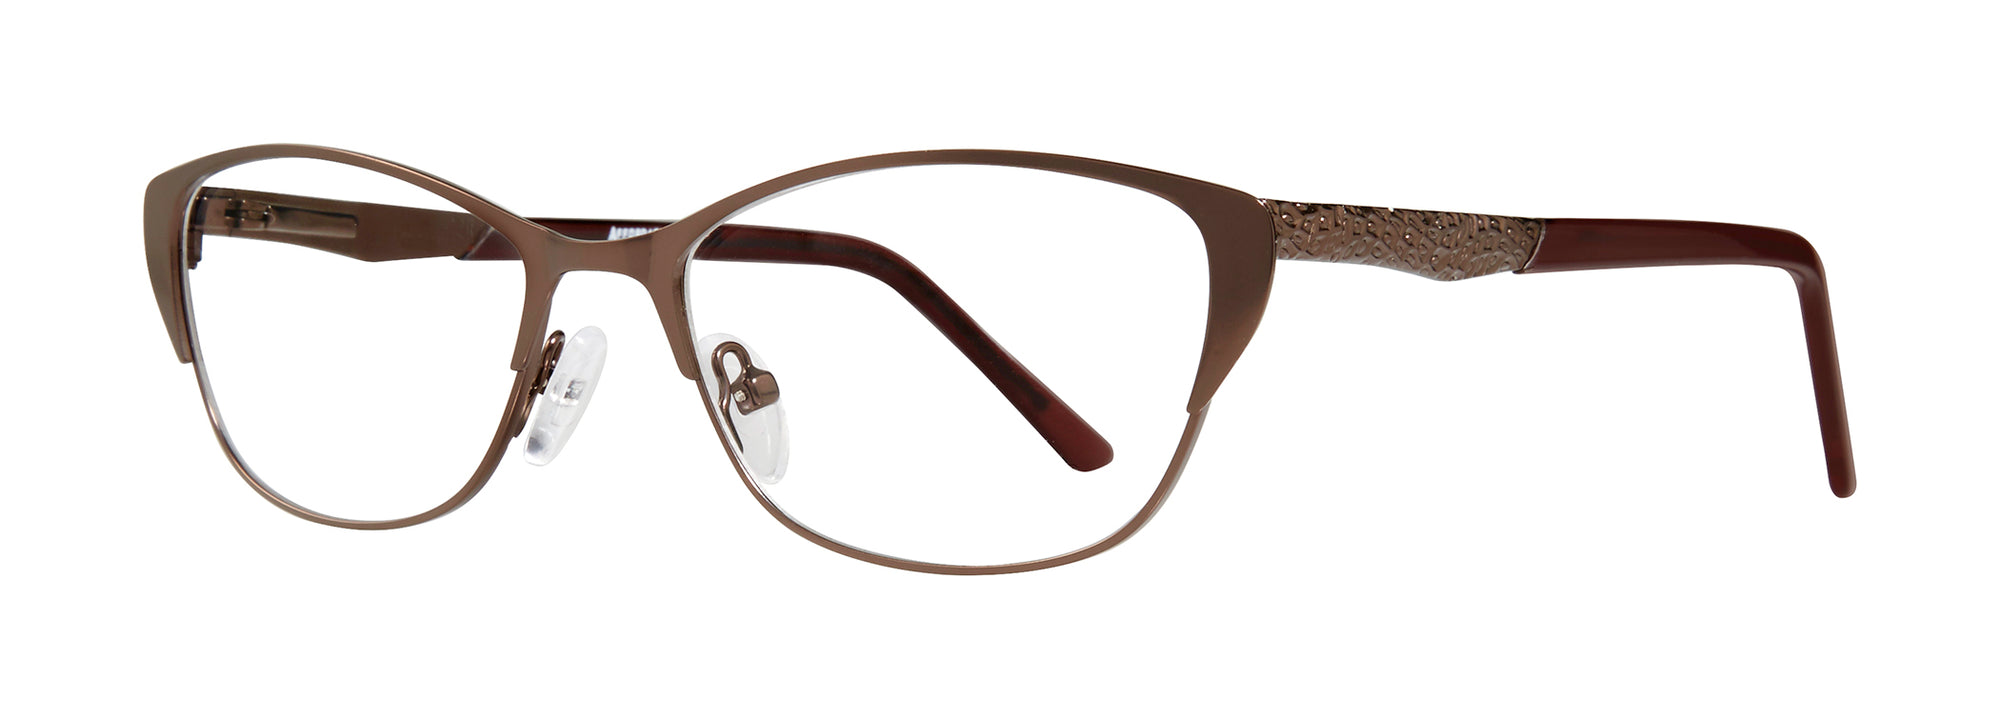 Affordable Designs Eyeglasses Jenelle - Go-Readers.com